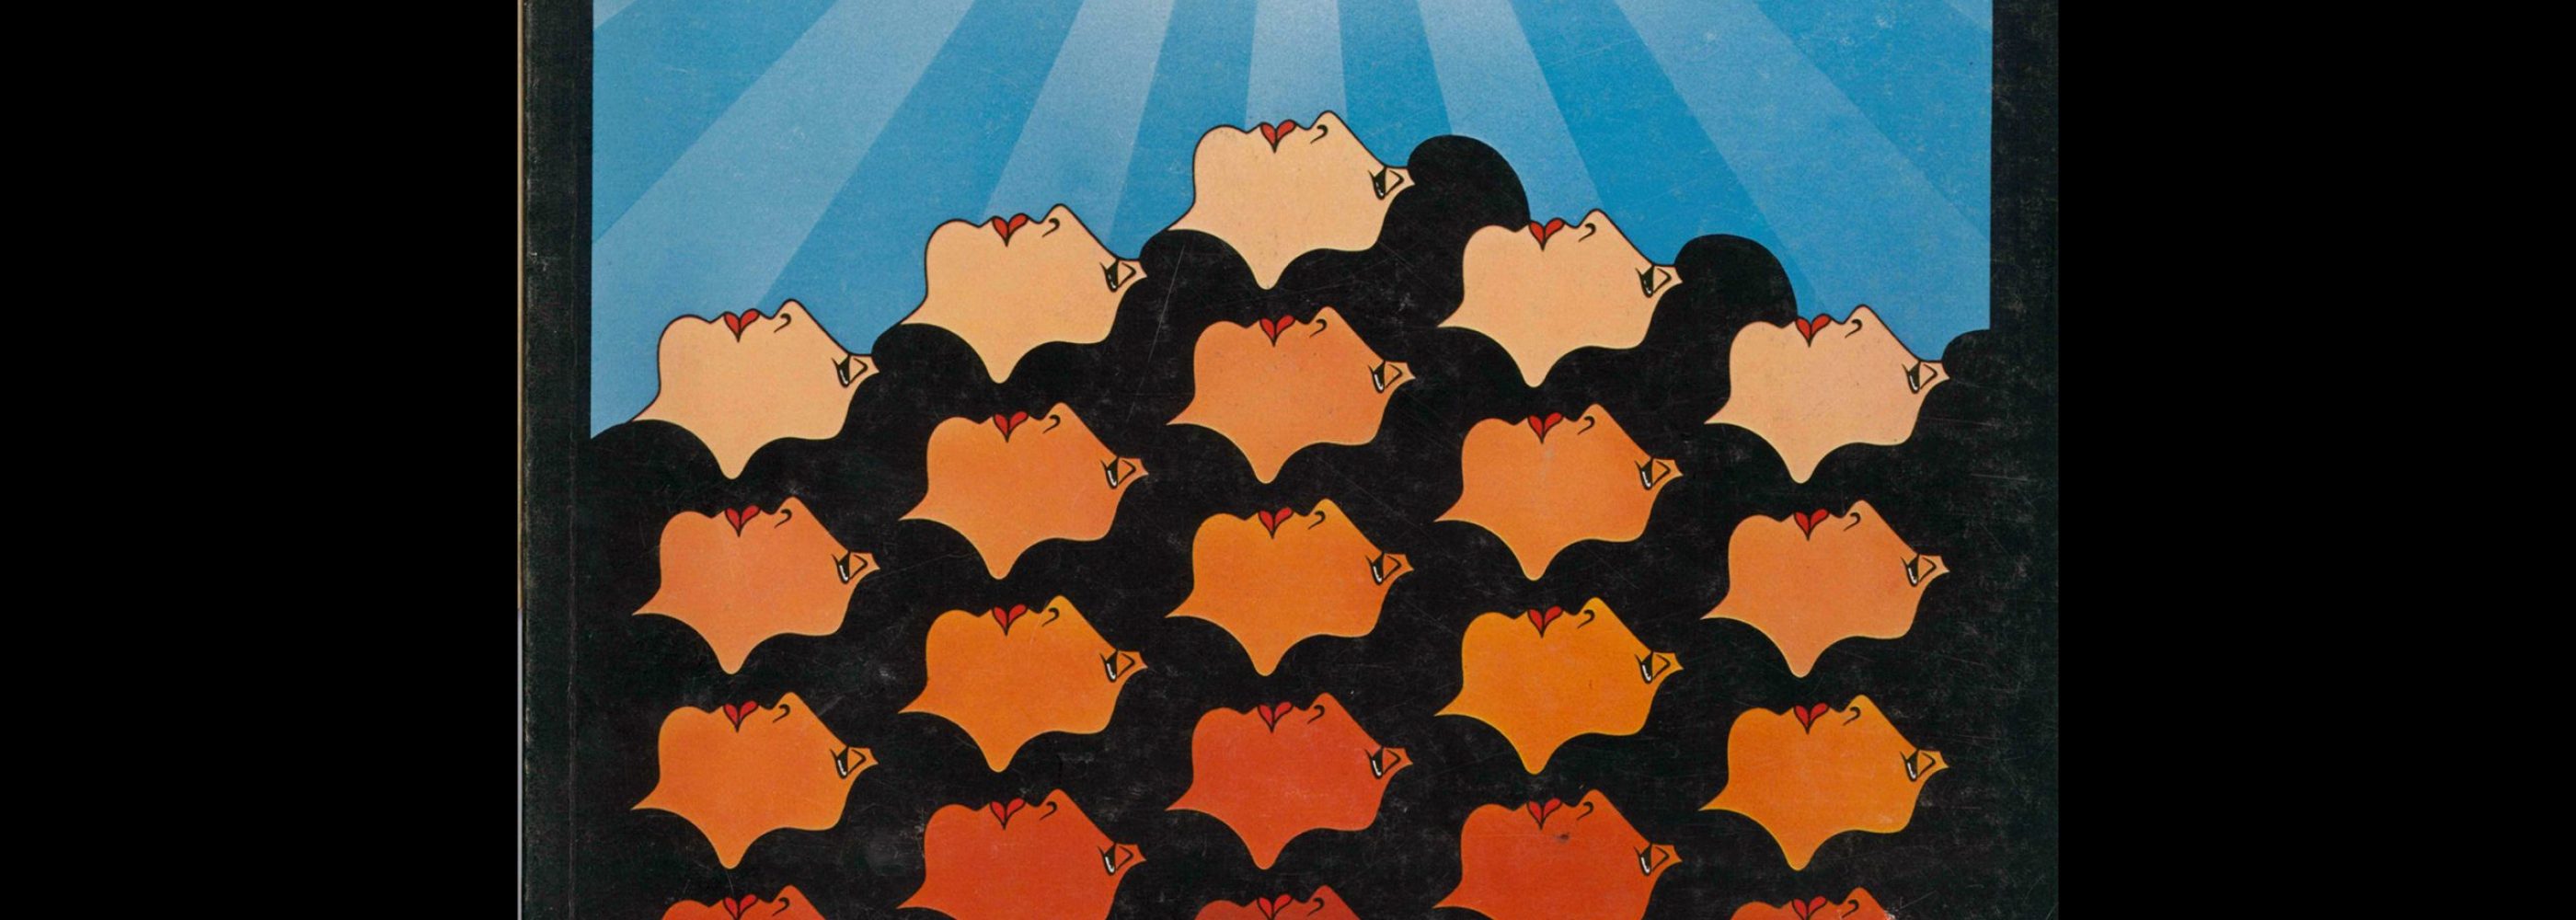 Novum Gebrauchsgraphik, 3, 1978. Cover design by Wenzel Schmidt